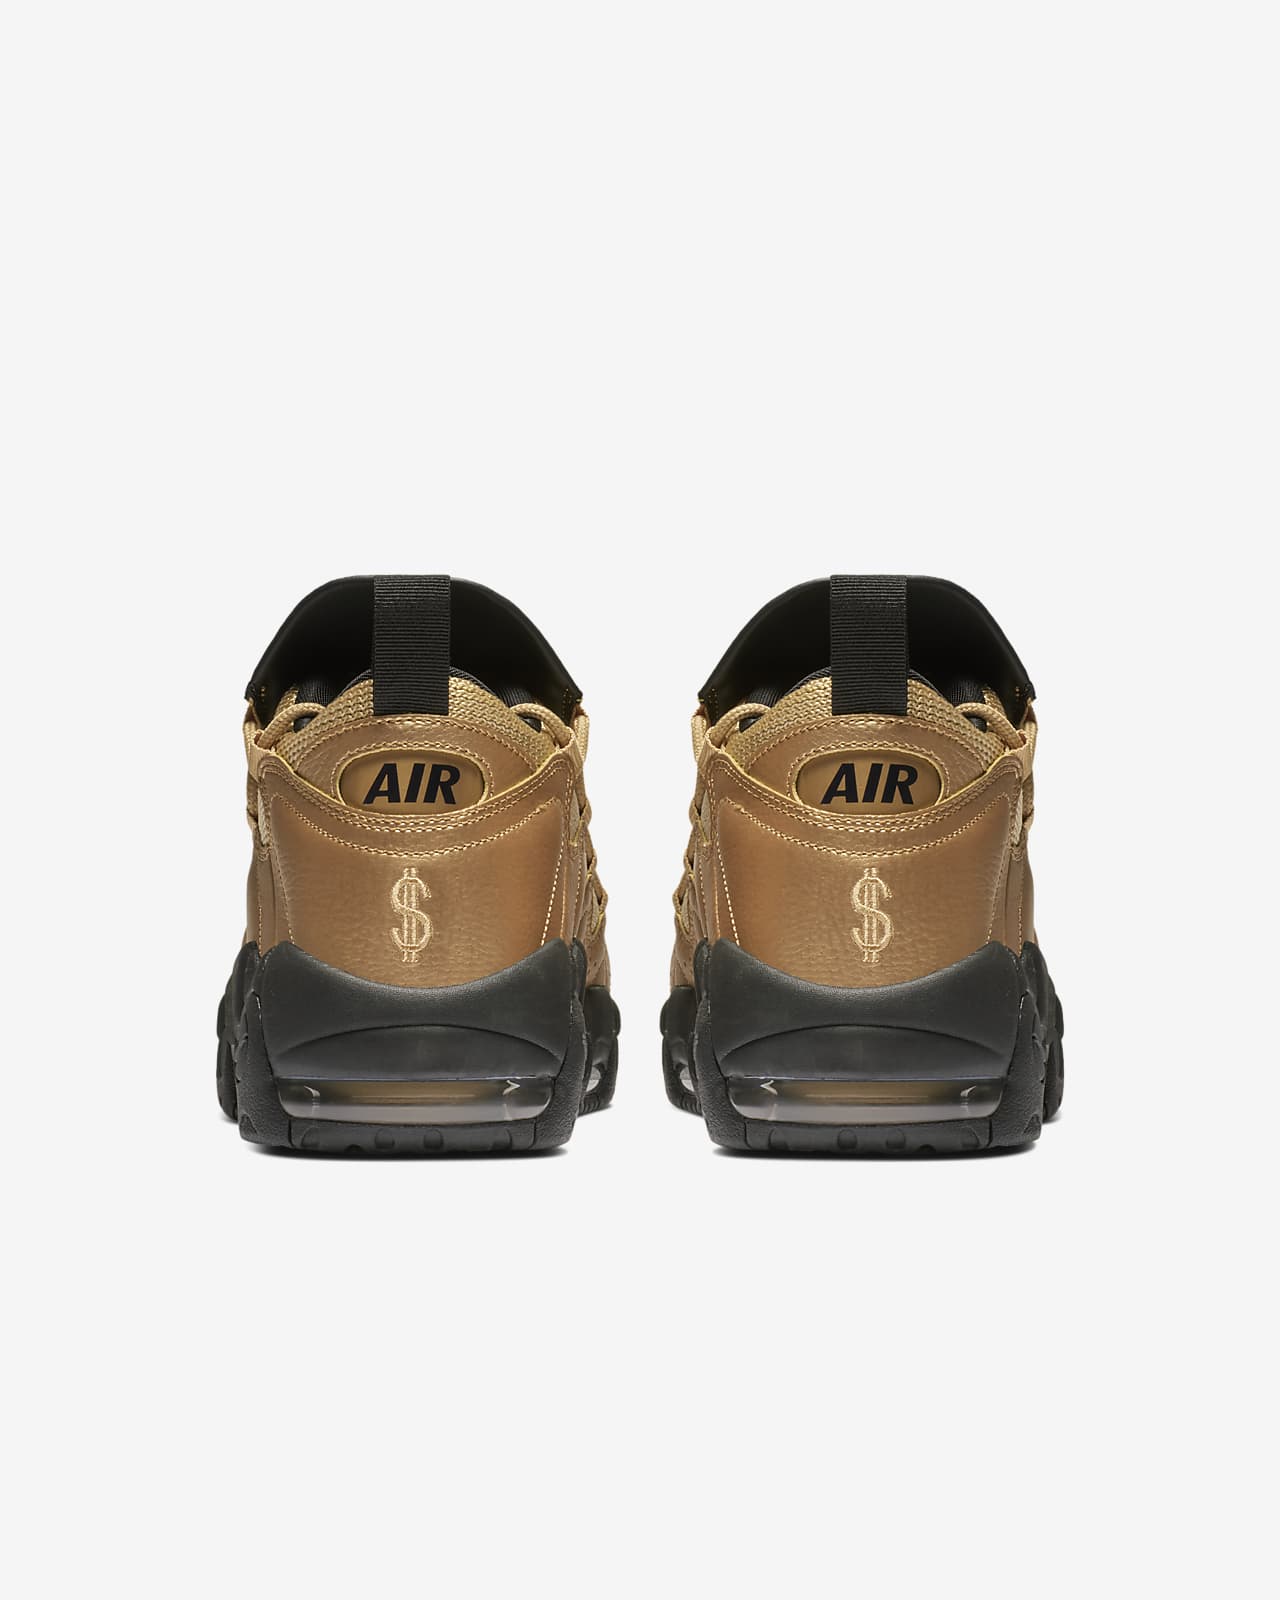 air money tennis shoes